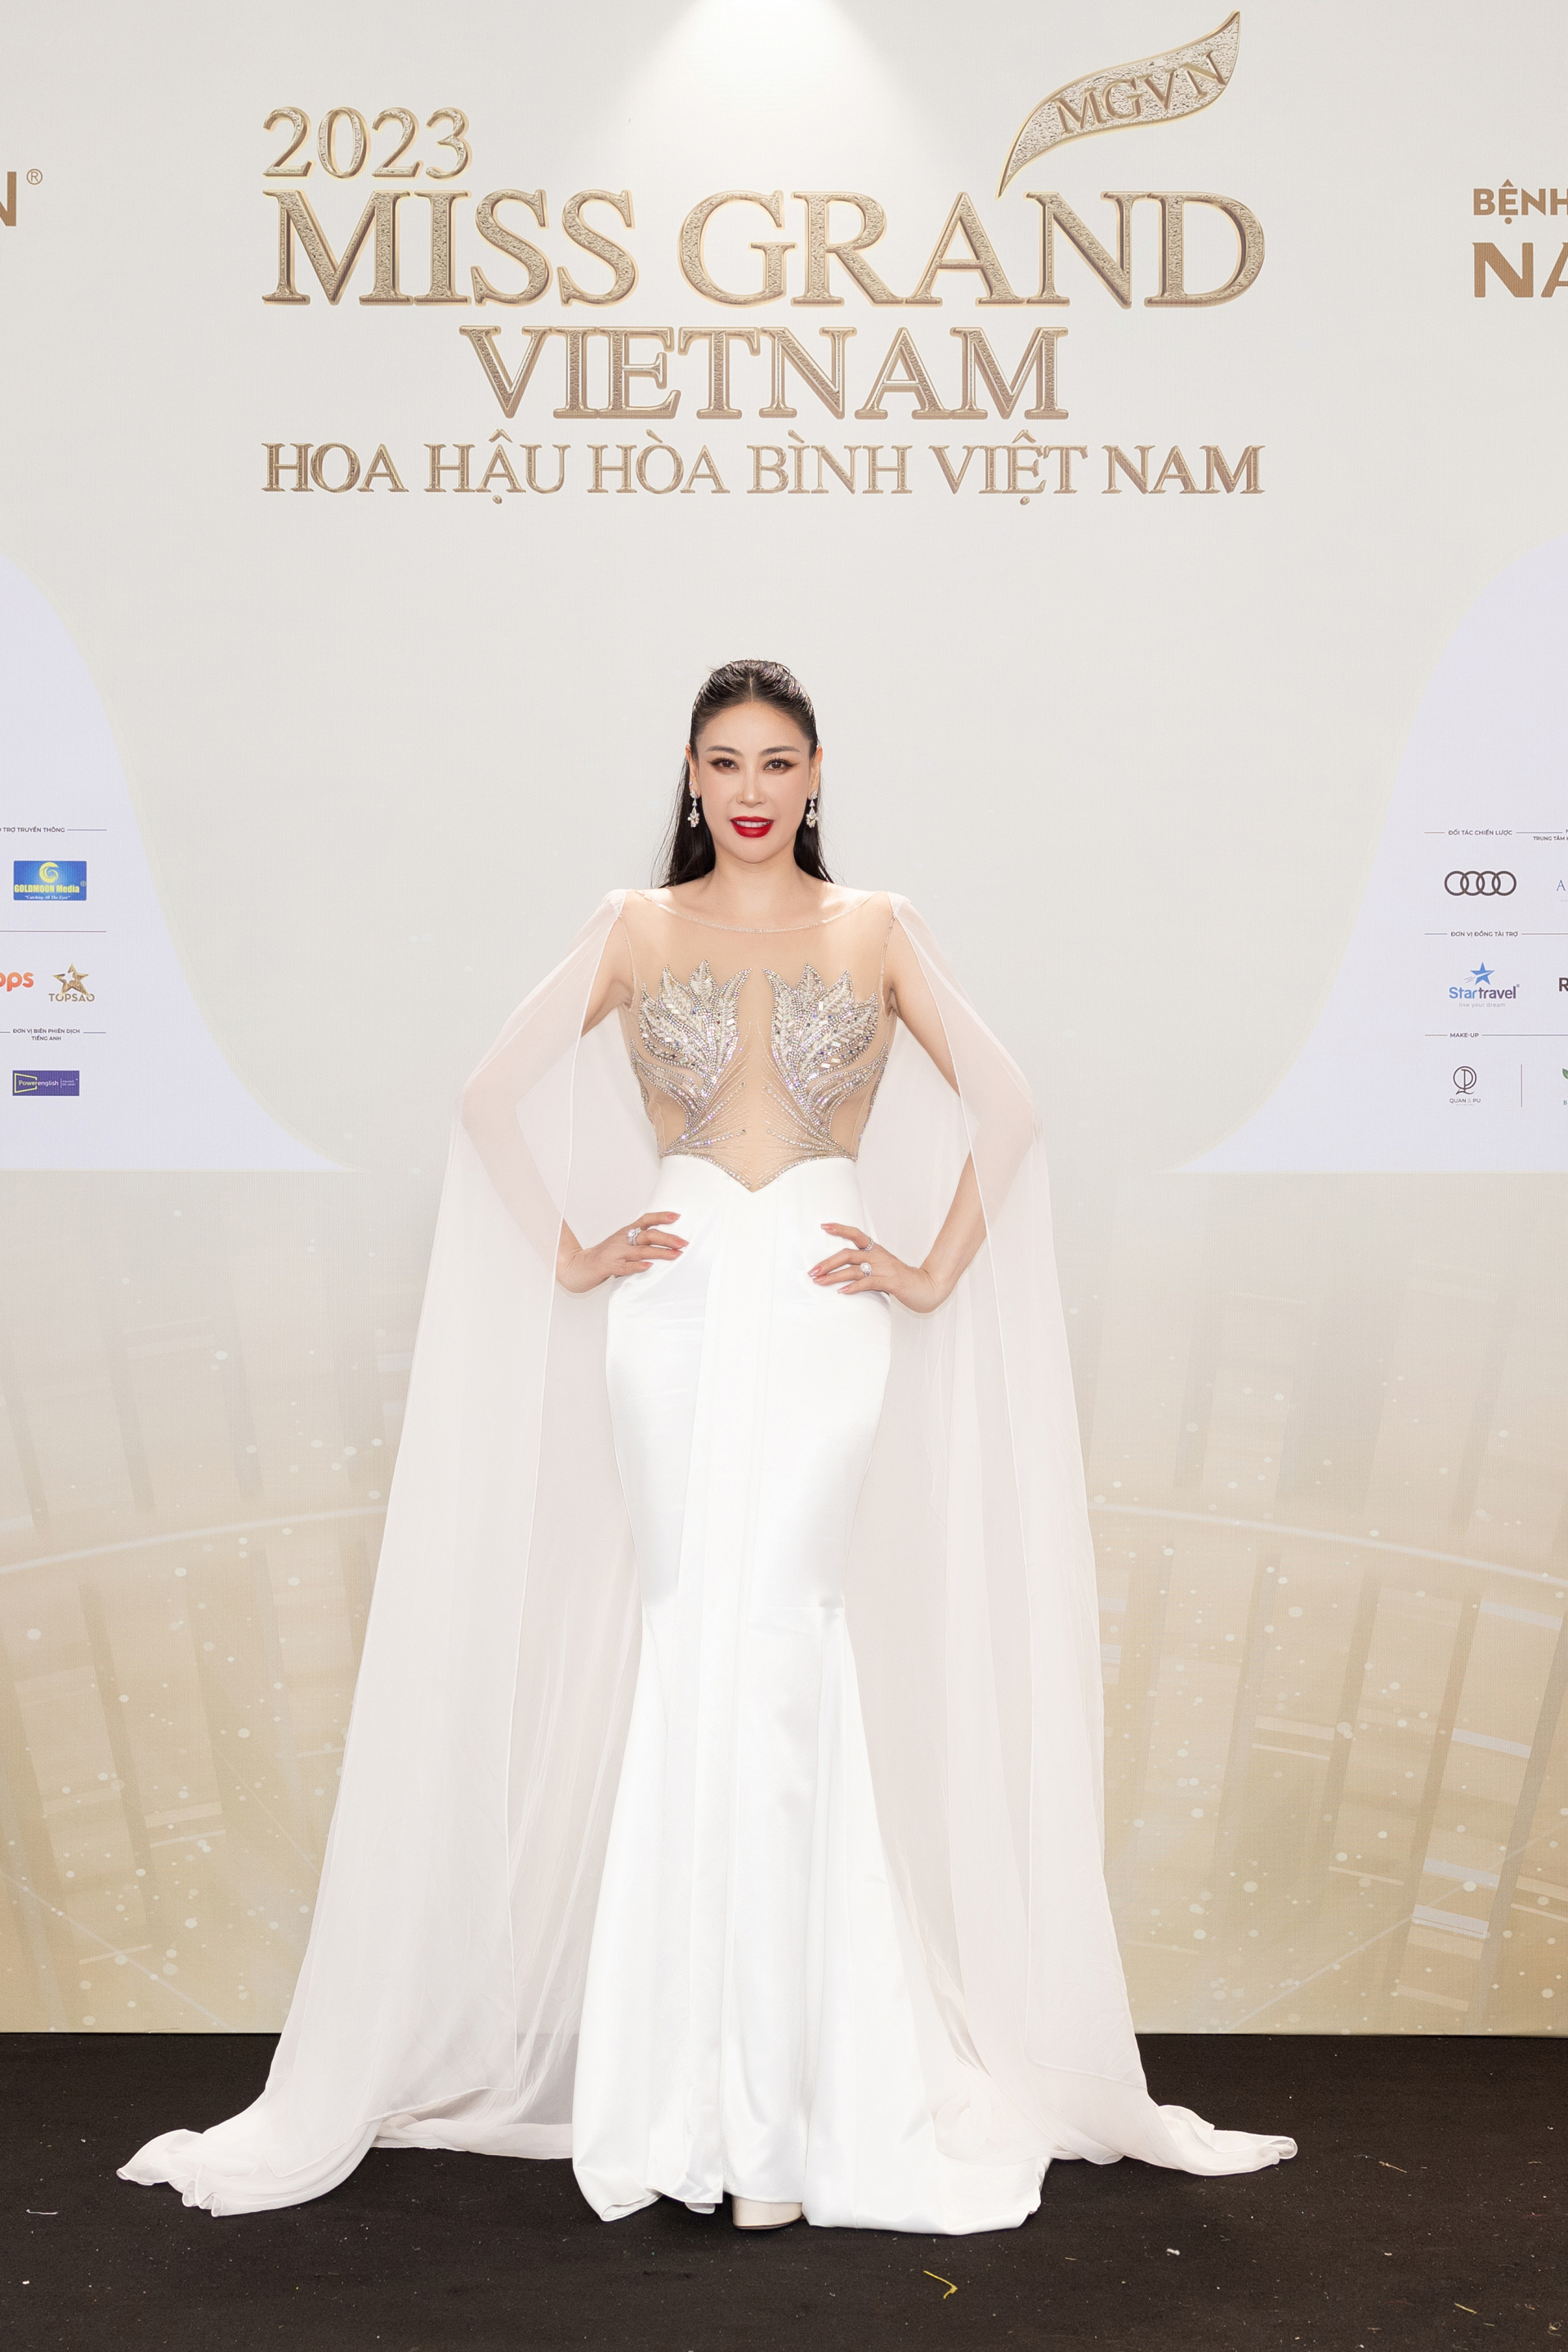 Thảm đỏ chung kết Miss Grand Vietnam 2023: Vợ chồng Trường Giang Nhã Phương đi cùng bạn trai tin đồn của Đoàn Thiên Ân - ảnh 2